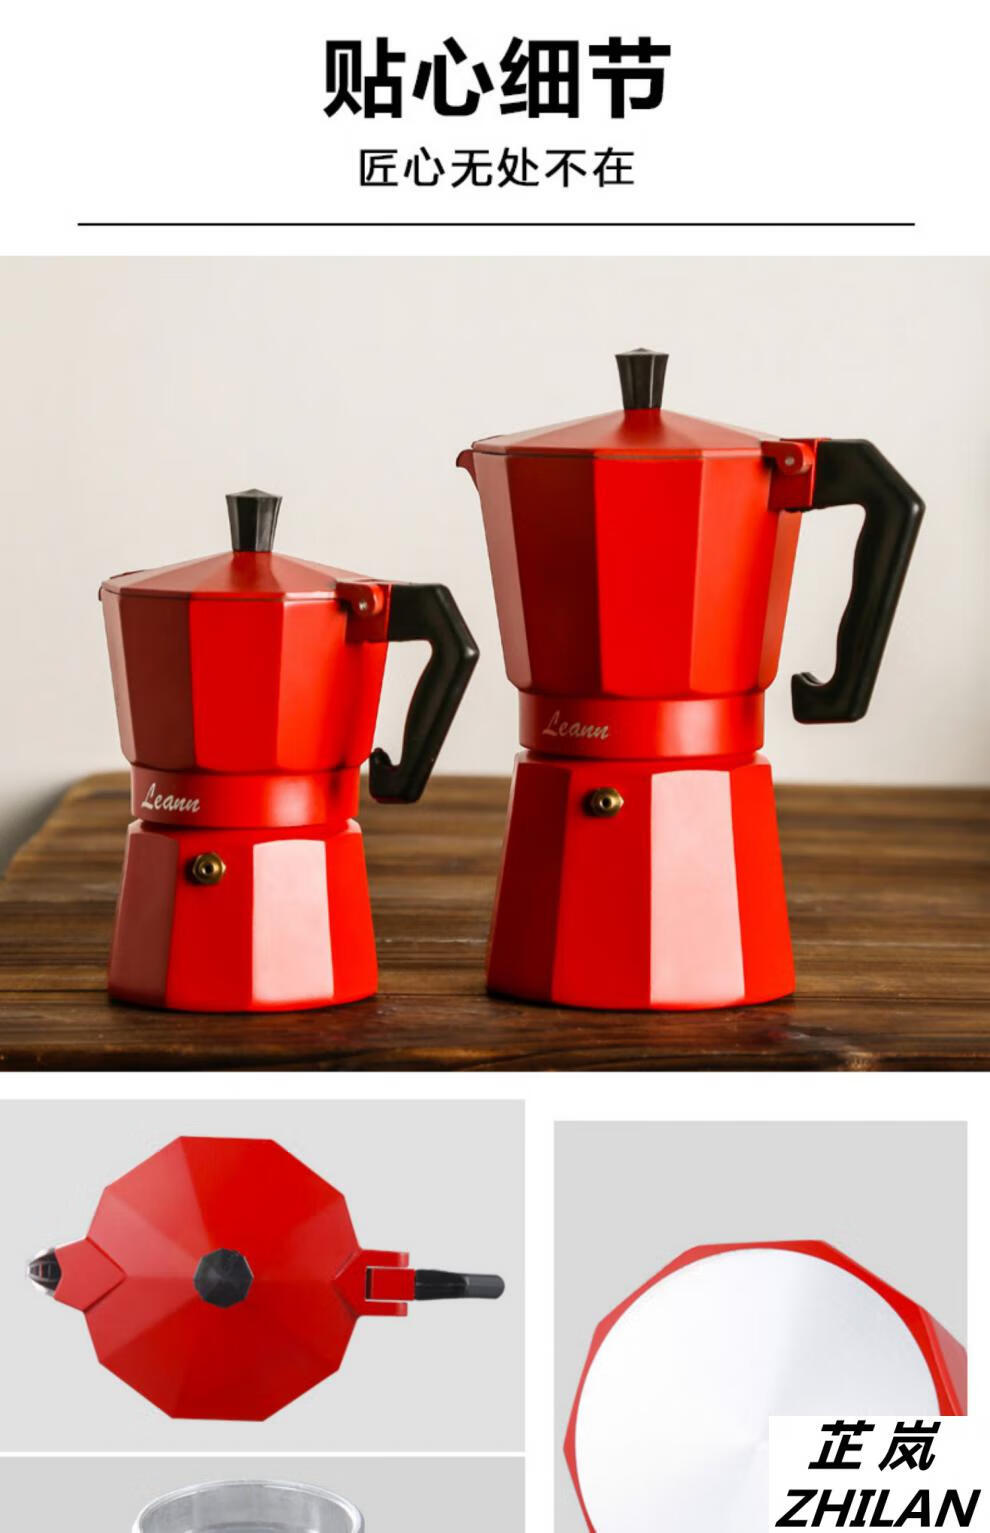 出口英国摩卡壶咖啡壶煮咖啡的器具家用意大利意式手冲滴滤咖啡壶红色